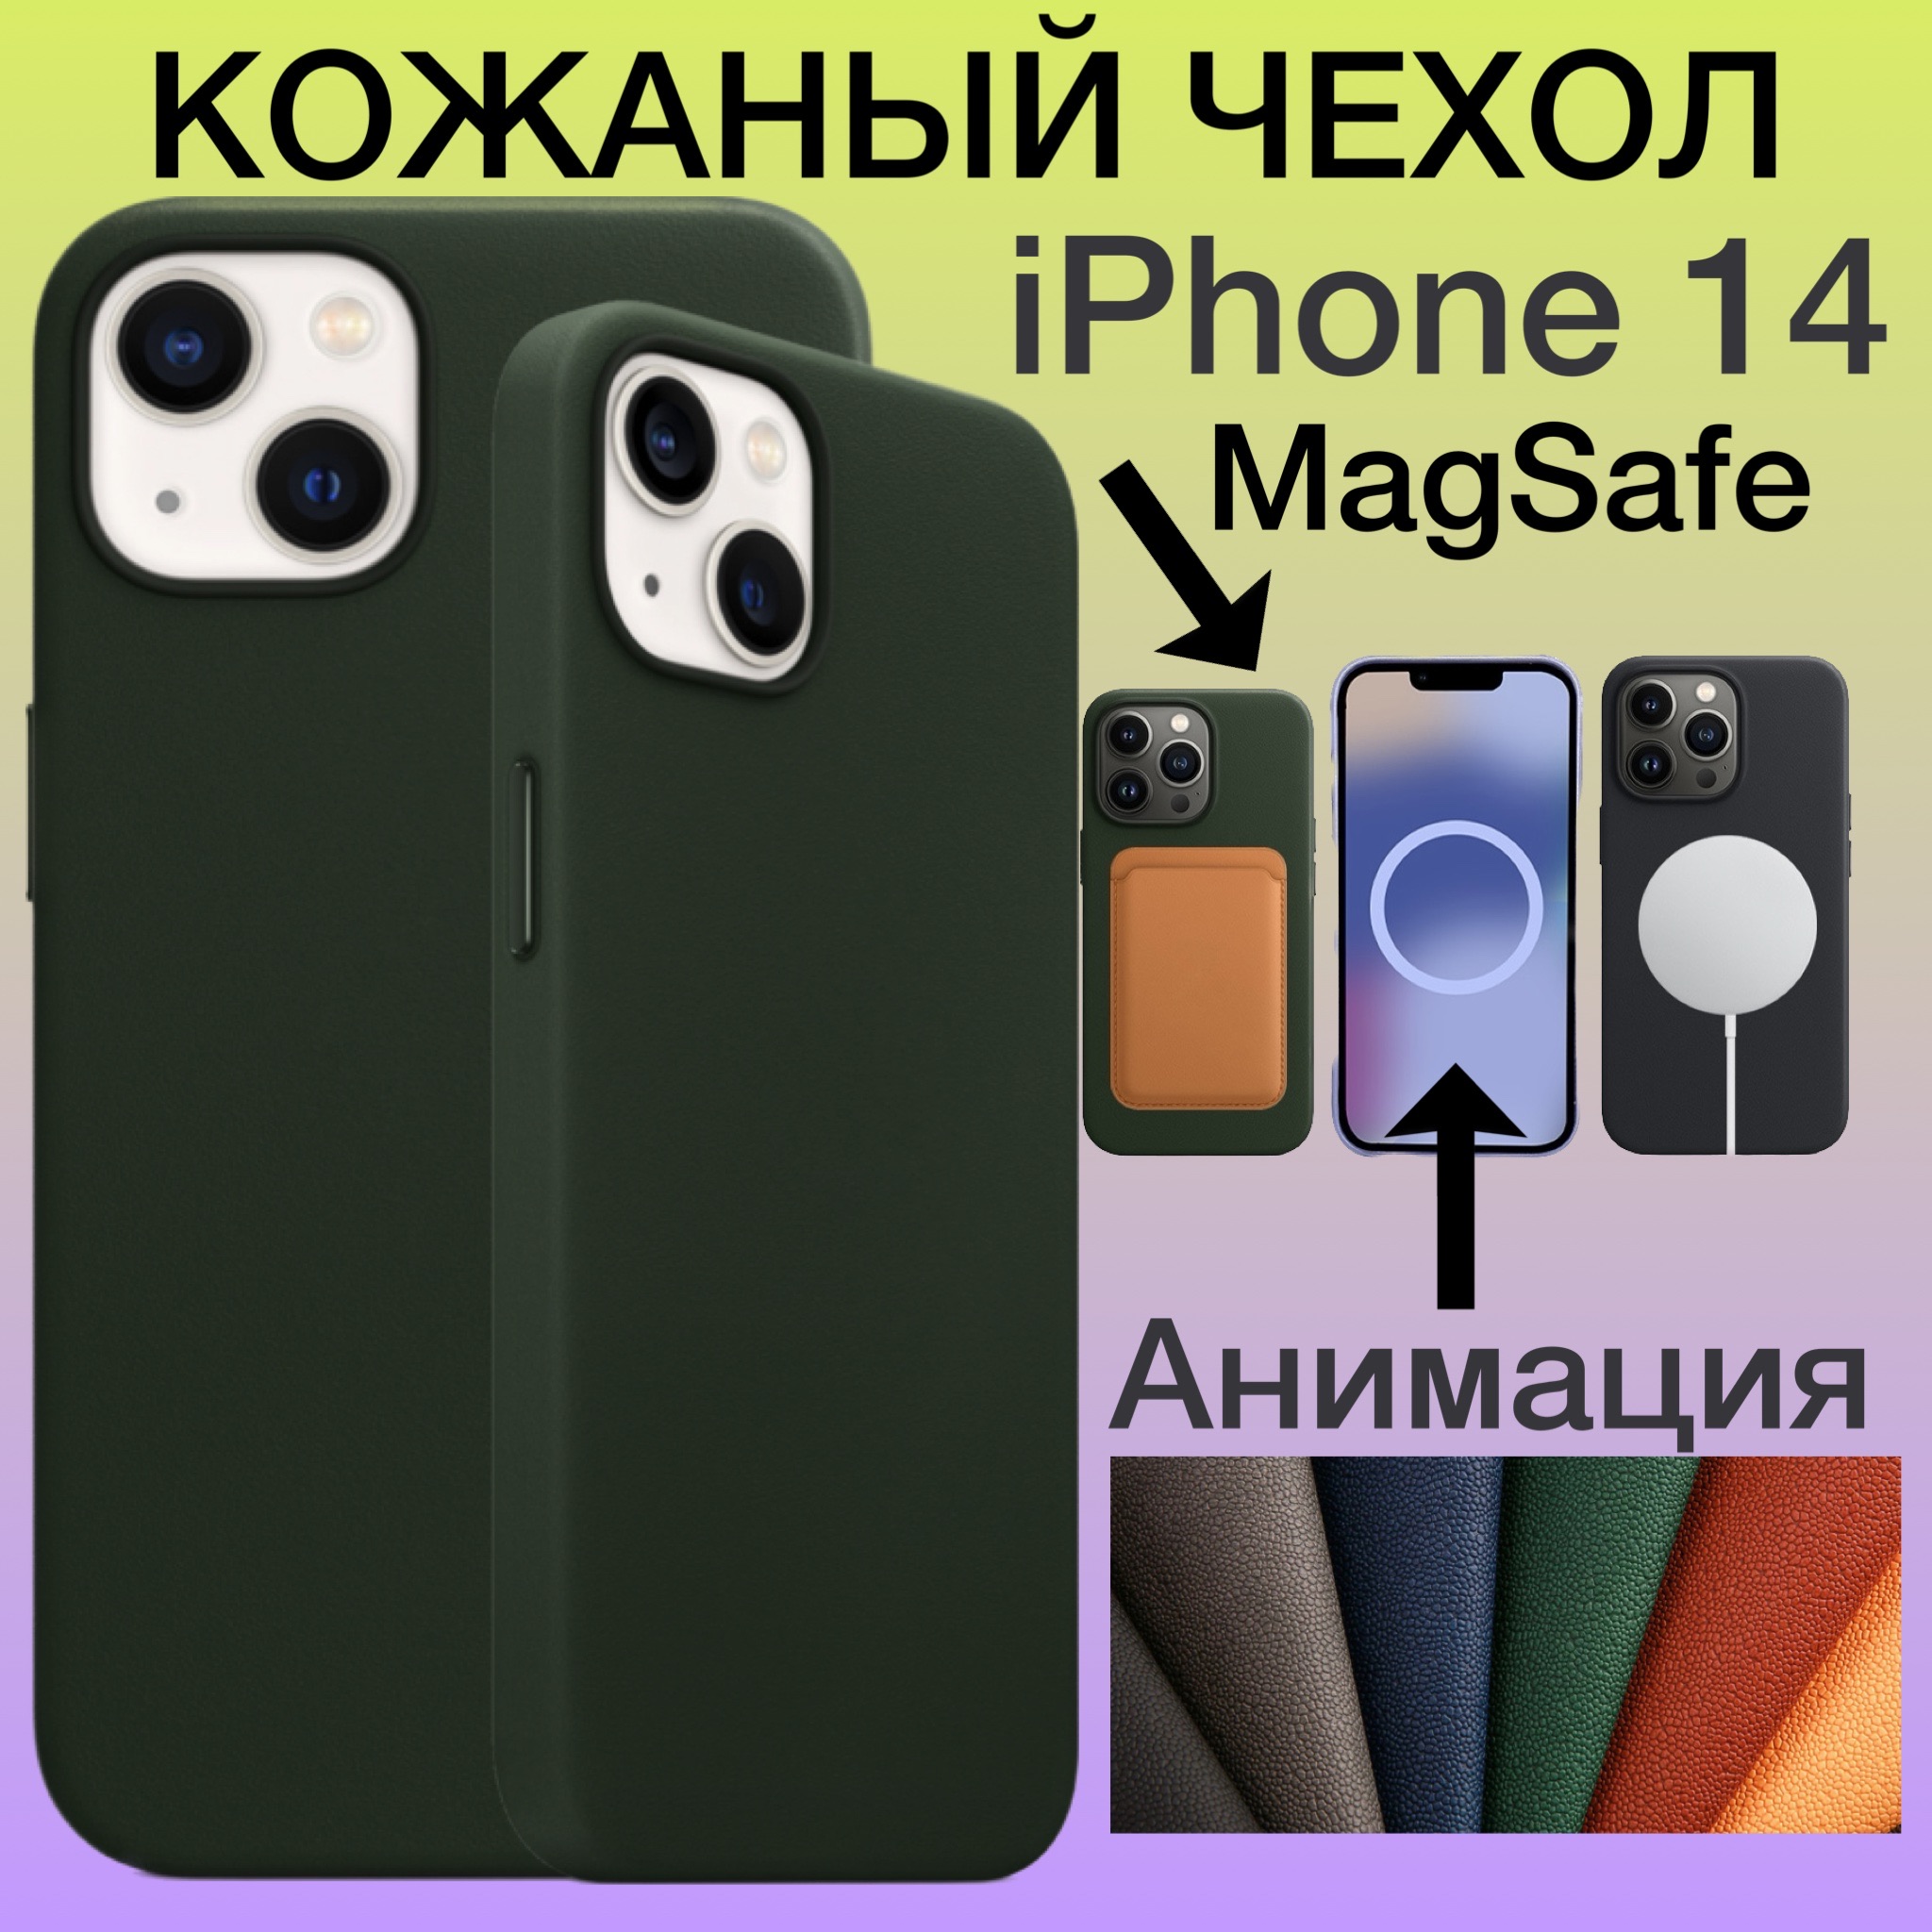 Кожаный чехол на iPhone 14 с MagSafe и Анимацией для Айфон 14 цвет зеленый